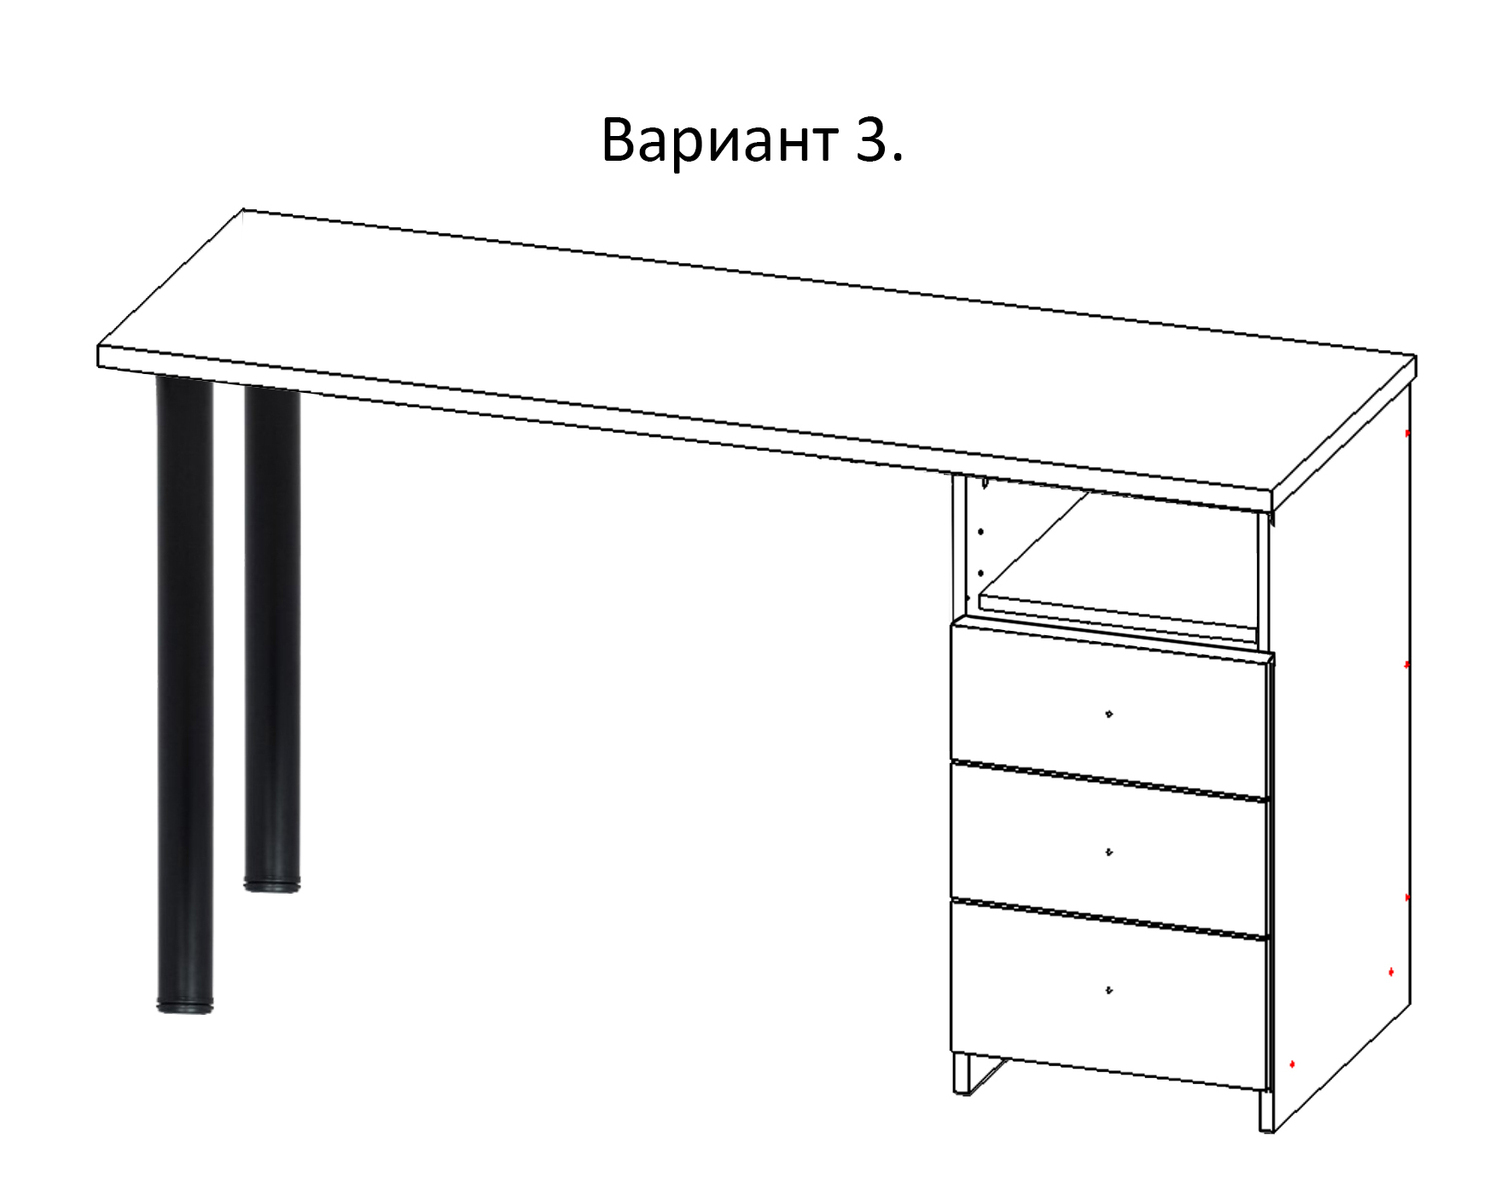 Маникюрный стол, вариант 3